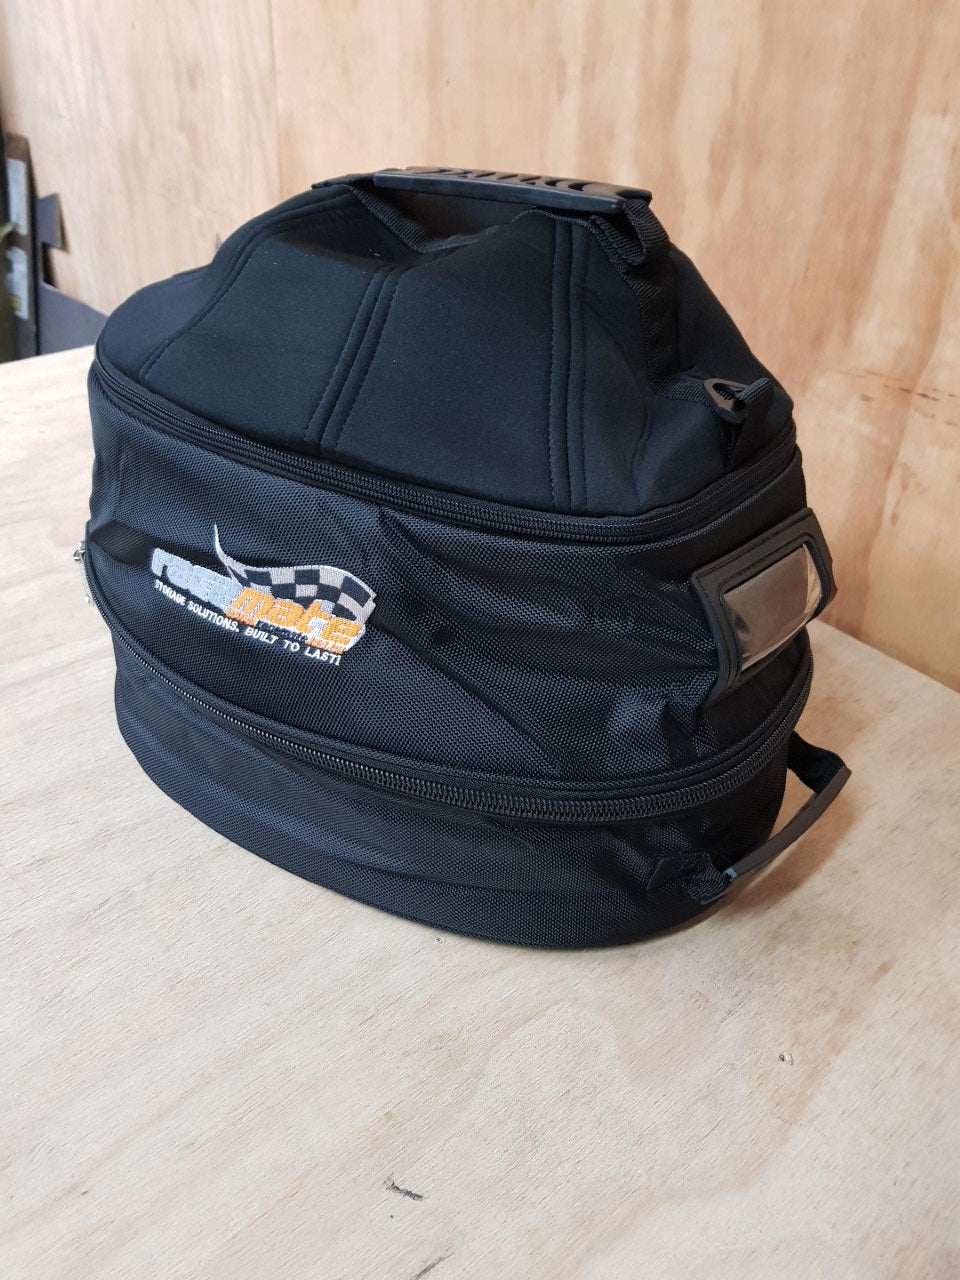 Racemate deluxe Helmet bag 